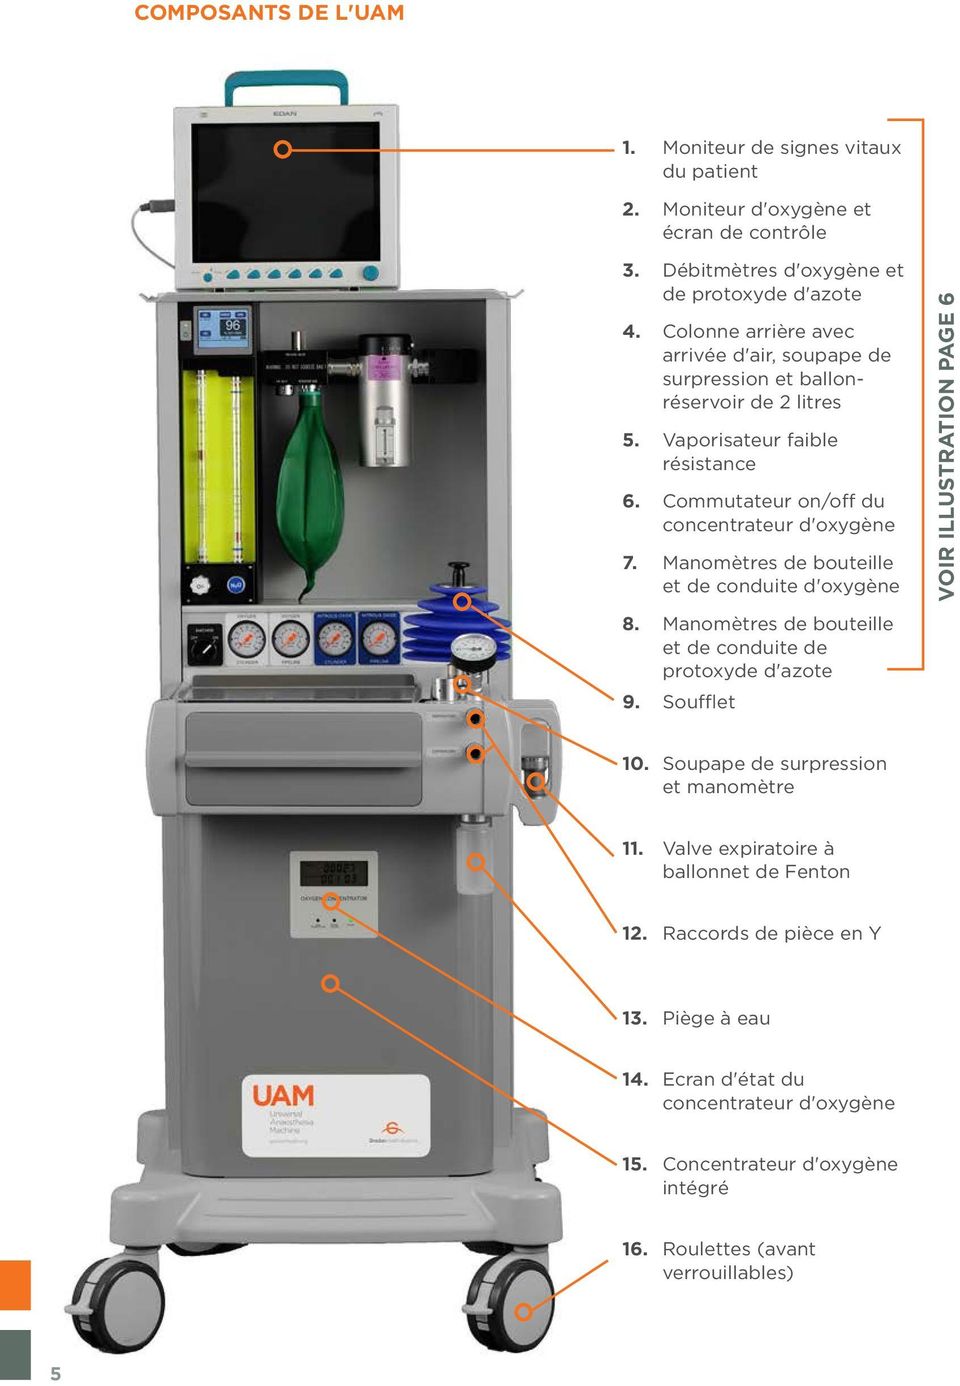 Manomètres de bouteille et de conduite d'oxygène Voir illustration page 6 8. Manomètres de bouteille et de conduite de protoxyde d'azote 9. Soufflet 10.